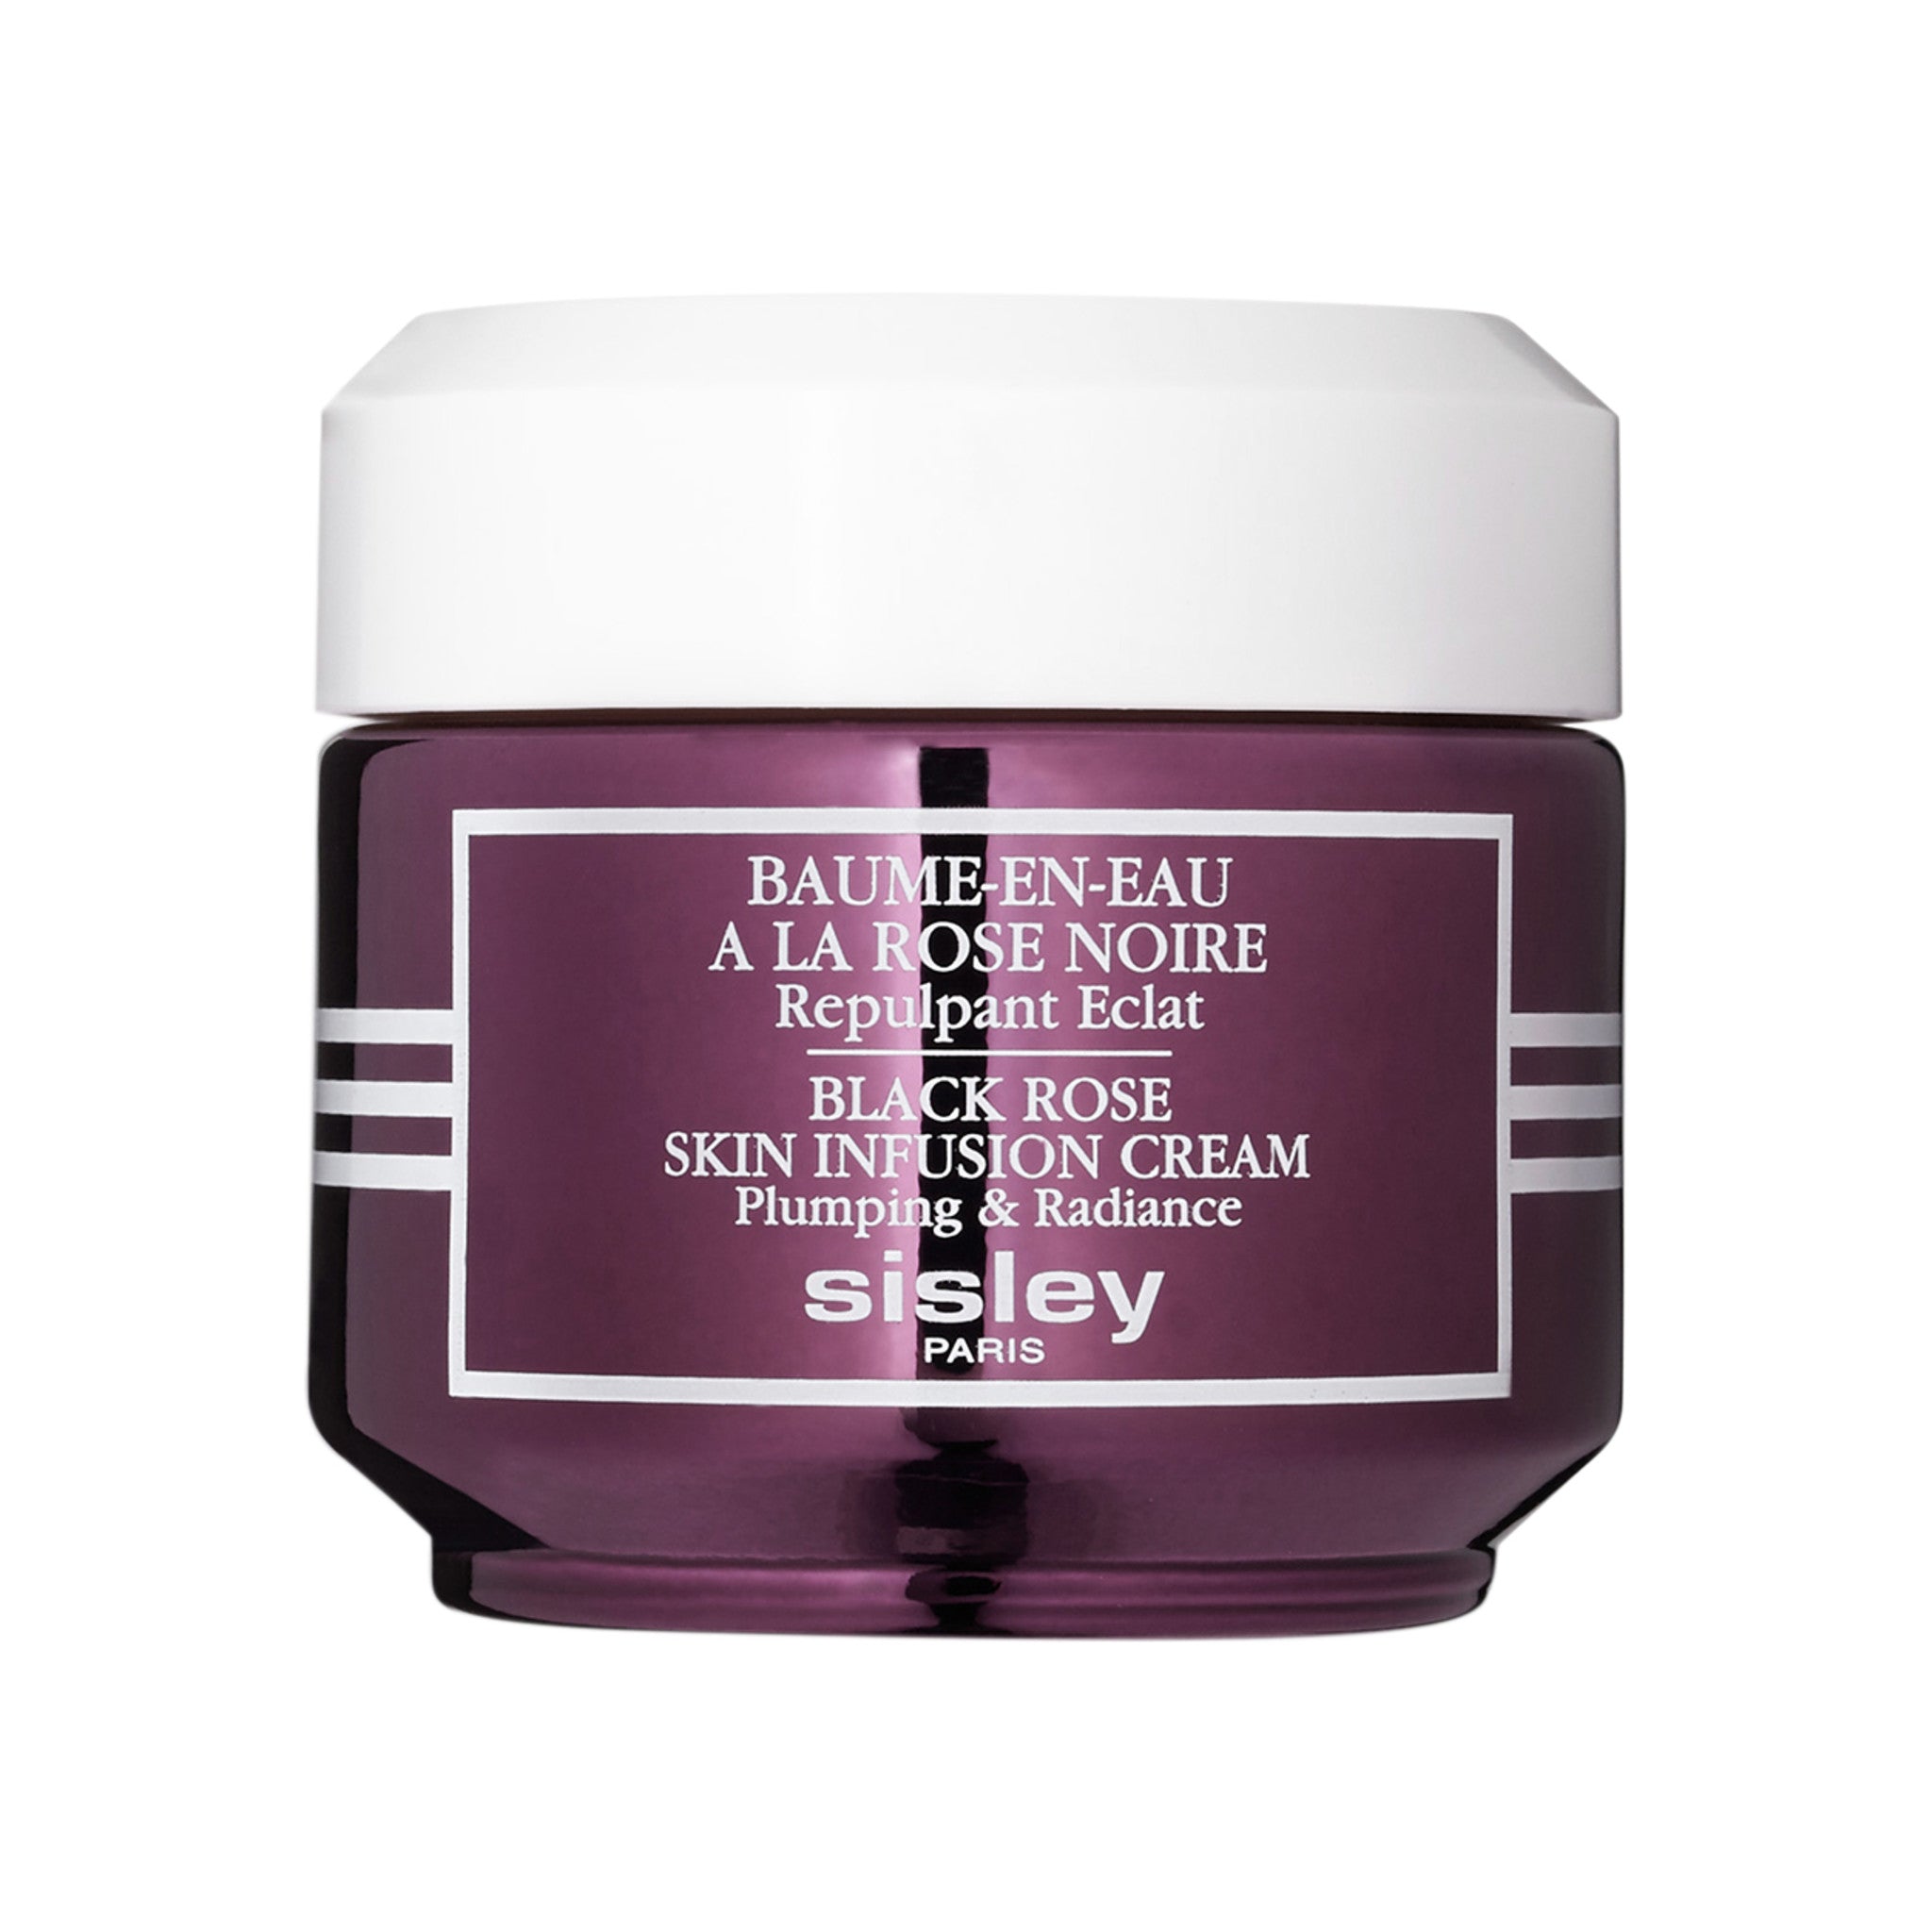 Sisley-Paris Black Rose Skin Infusion Cream – Sisley-Paris 